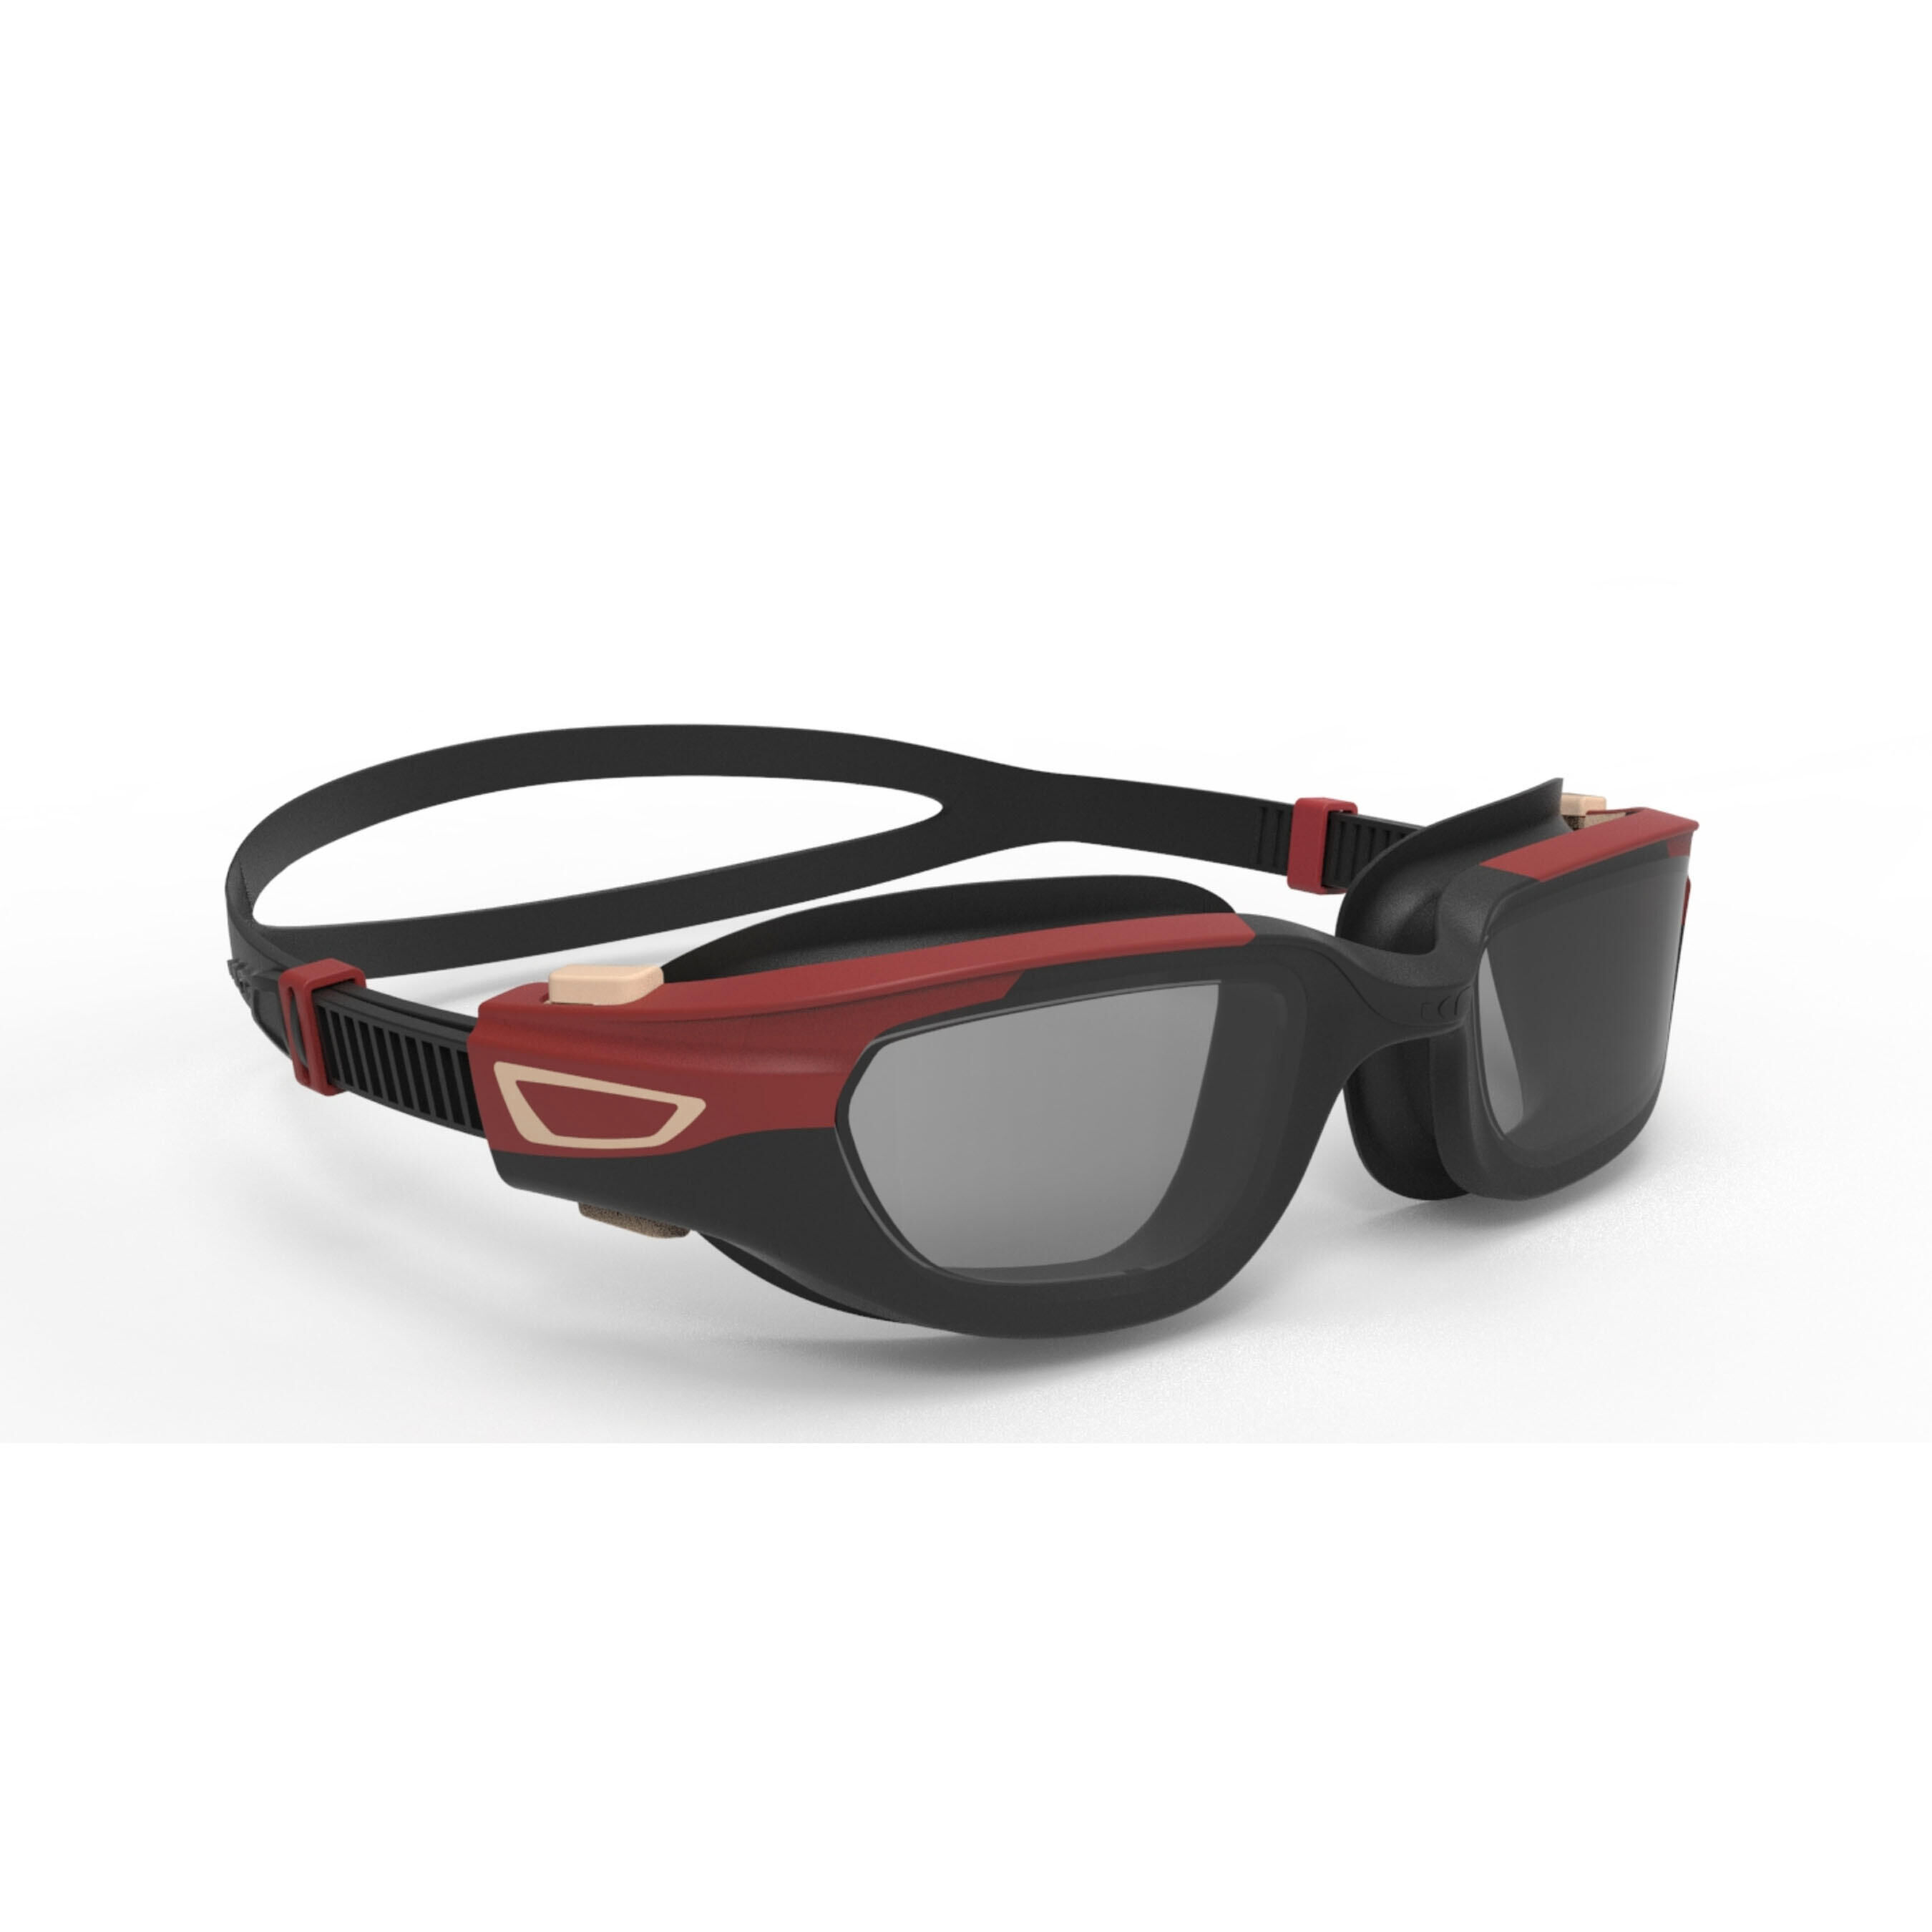 NABAIJI SPIRIT swimming goggles - Smoked lenses - Large - Red black